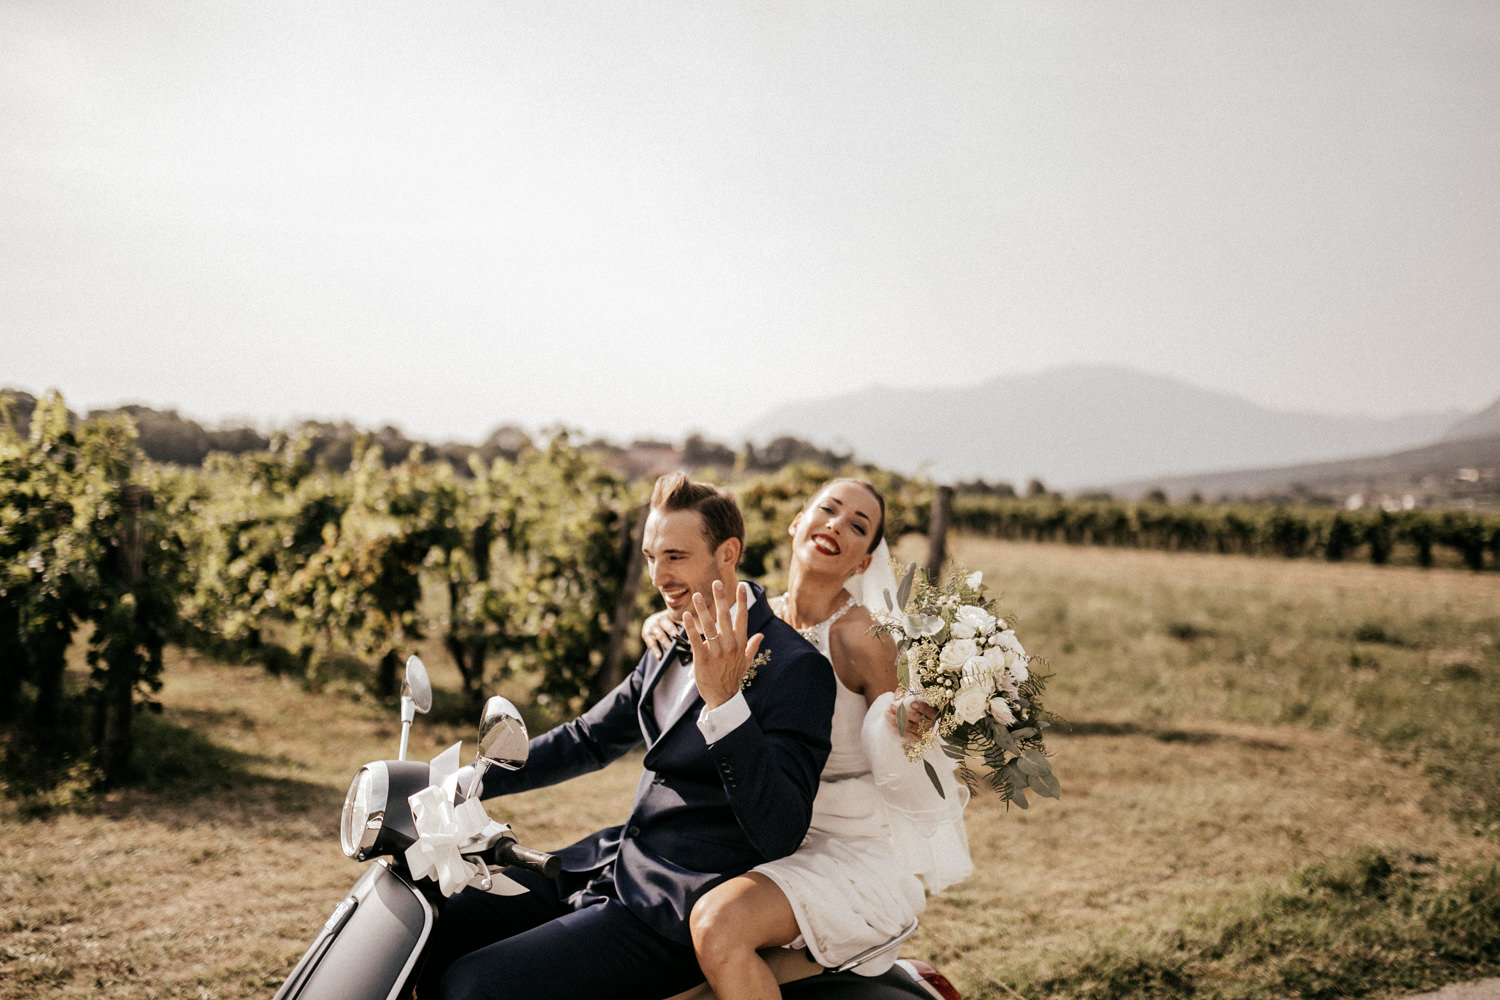 Bruidspaar op een scooter